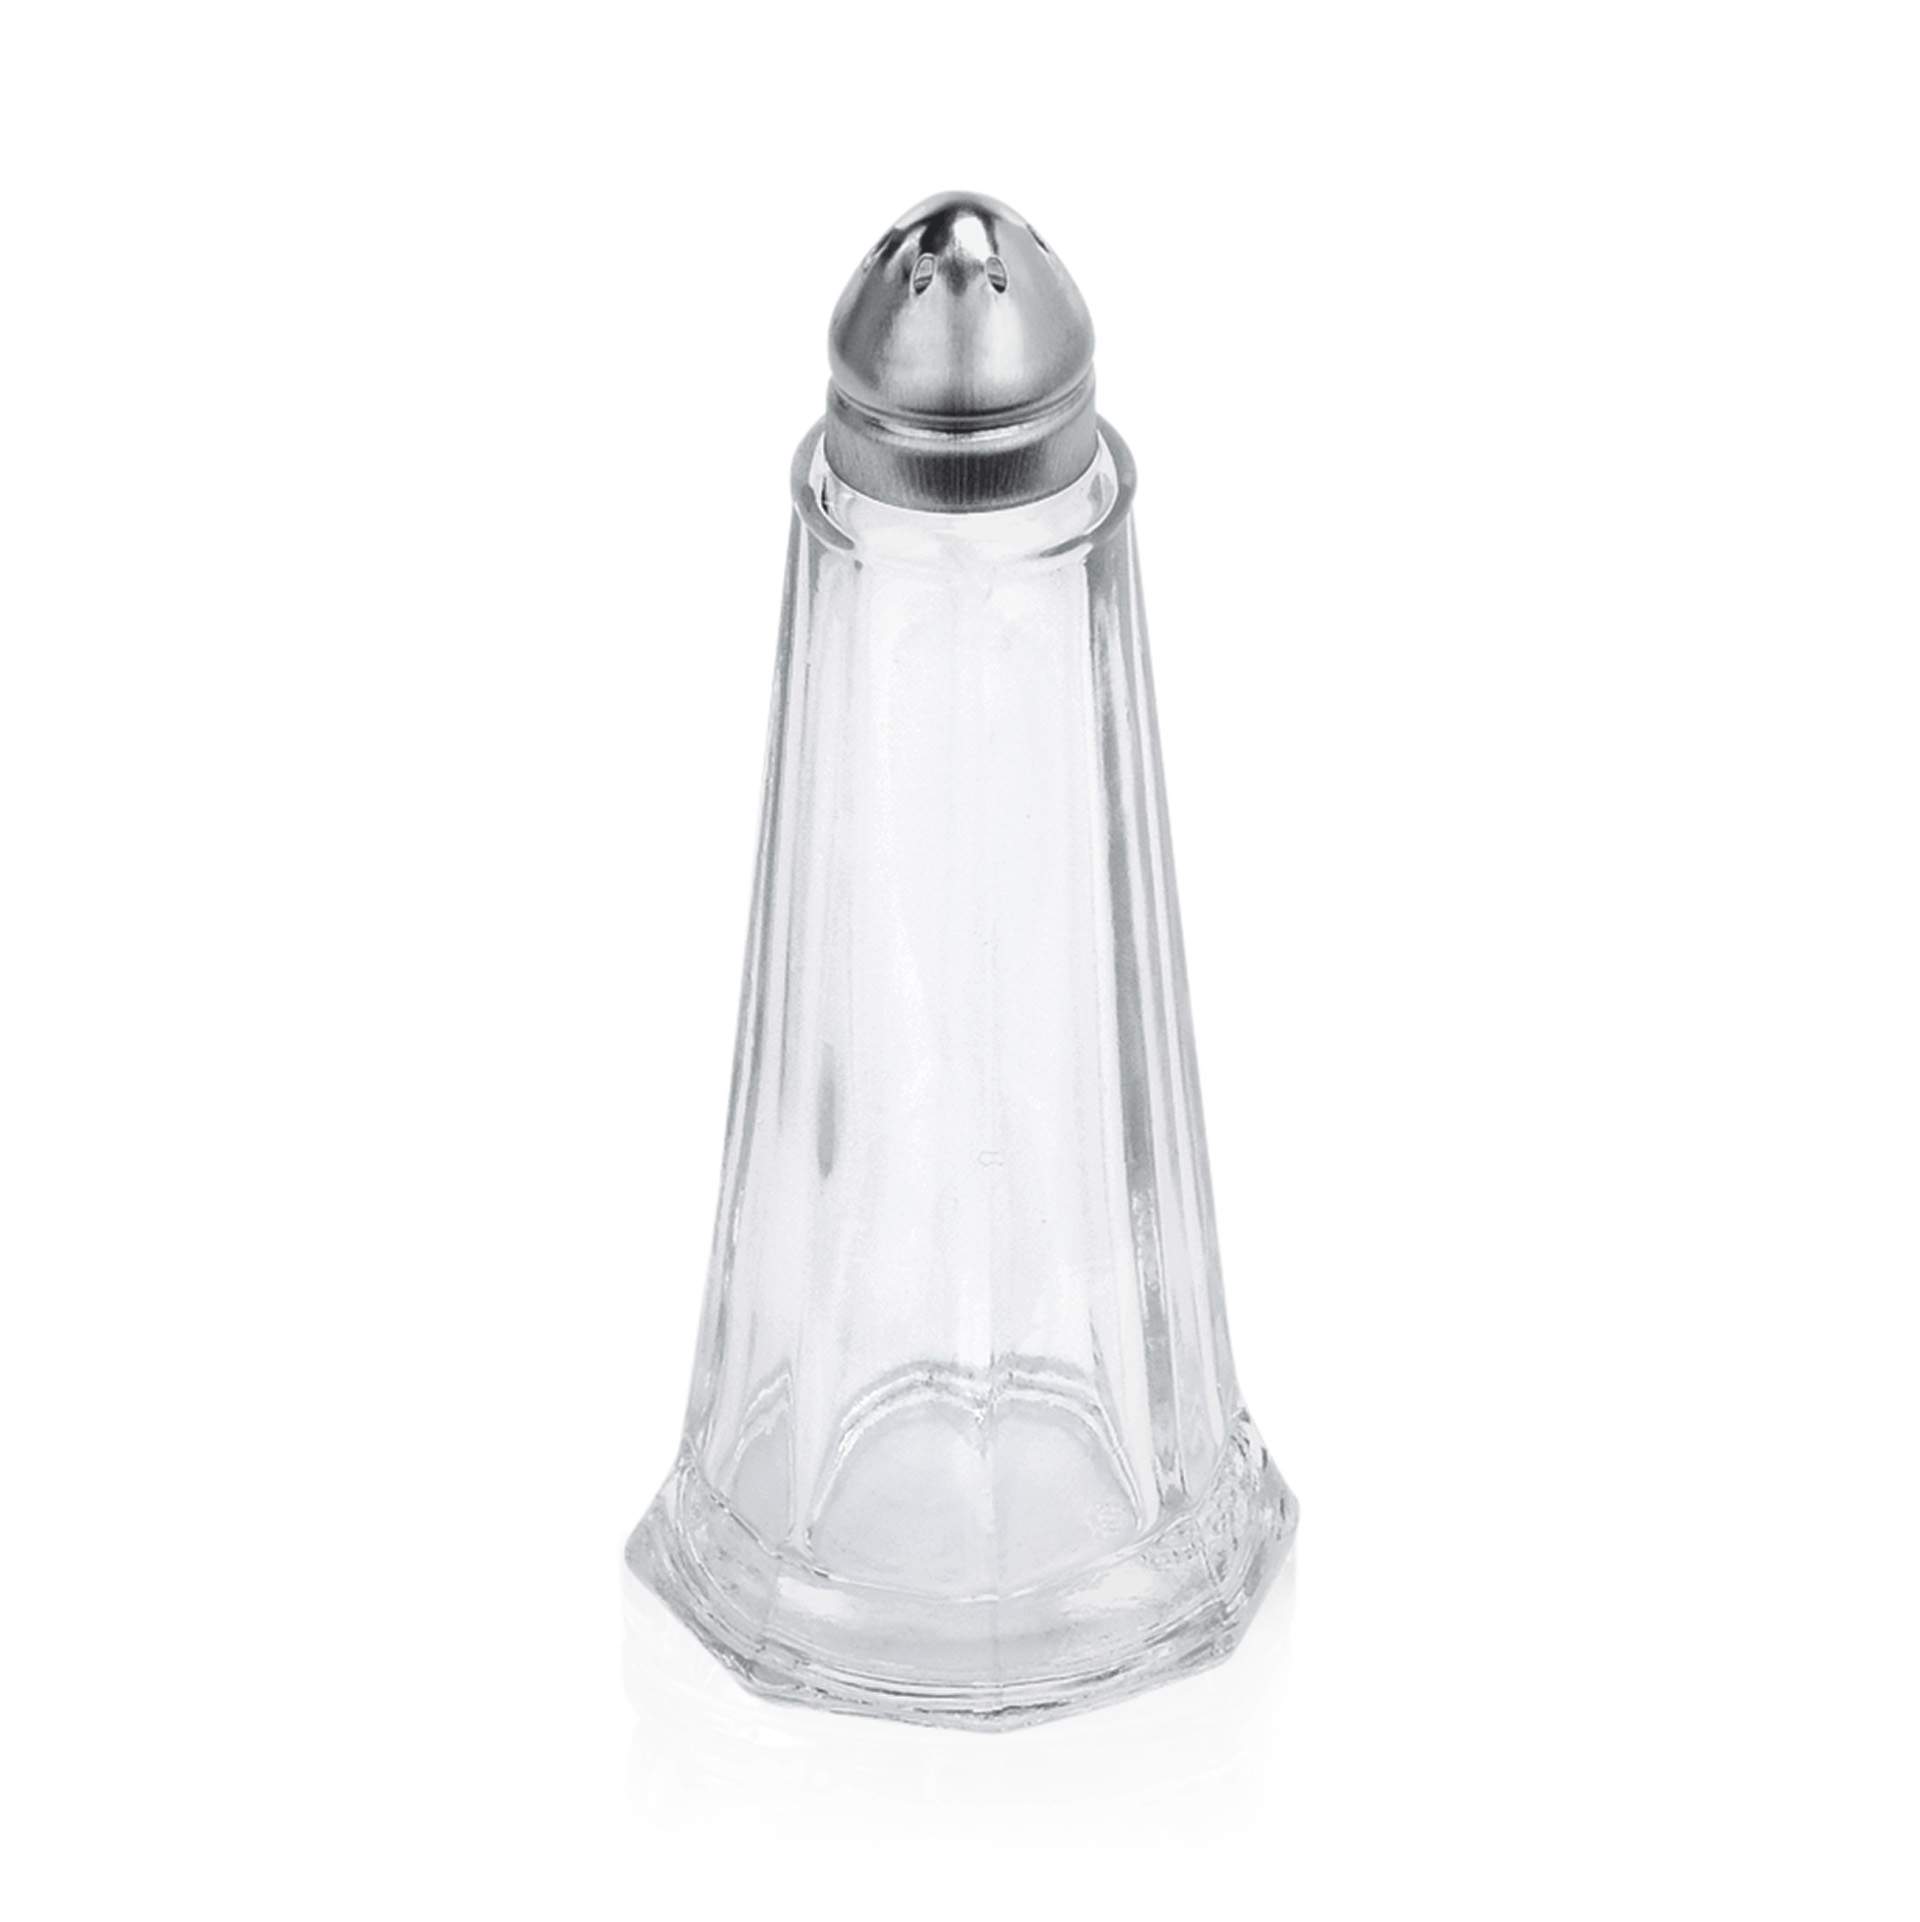 Salz- und Pfefferstreuer - Kappe aus Edelstahl - Abm. 11,0 cm - Ø unten 4,5 cm - Glas - 1479000-A